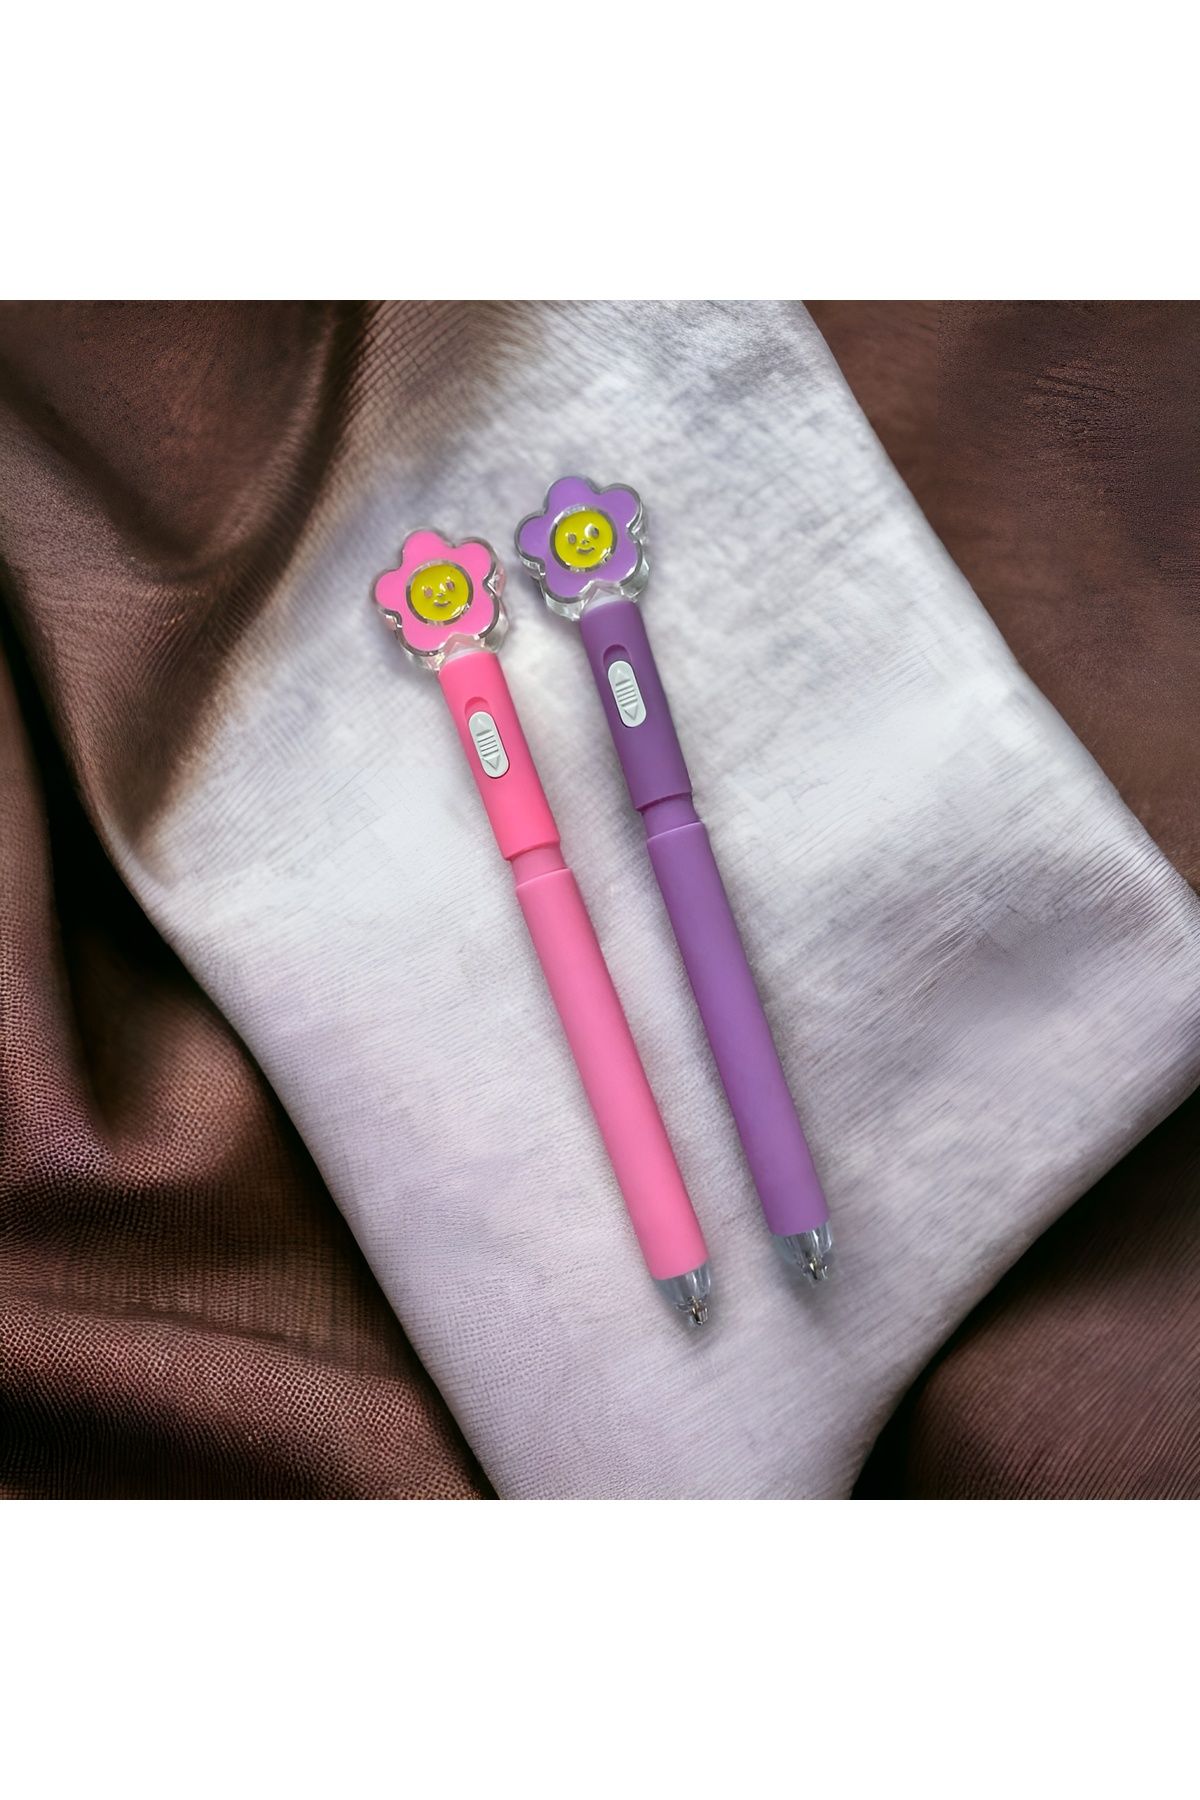 GÜZELYÜZ AVM Papatya Başlıklı Renkli Işıklı Versatil Uçlu Kalem 2 Adet Rengarenk Kalem 0,7 Uçlu Kurşun Kalem